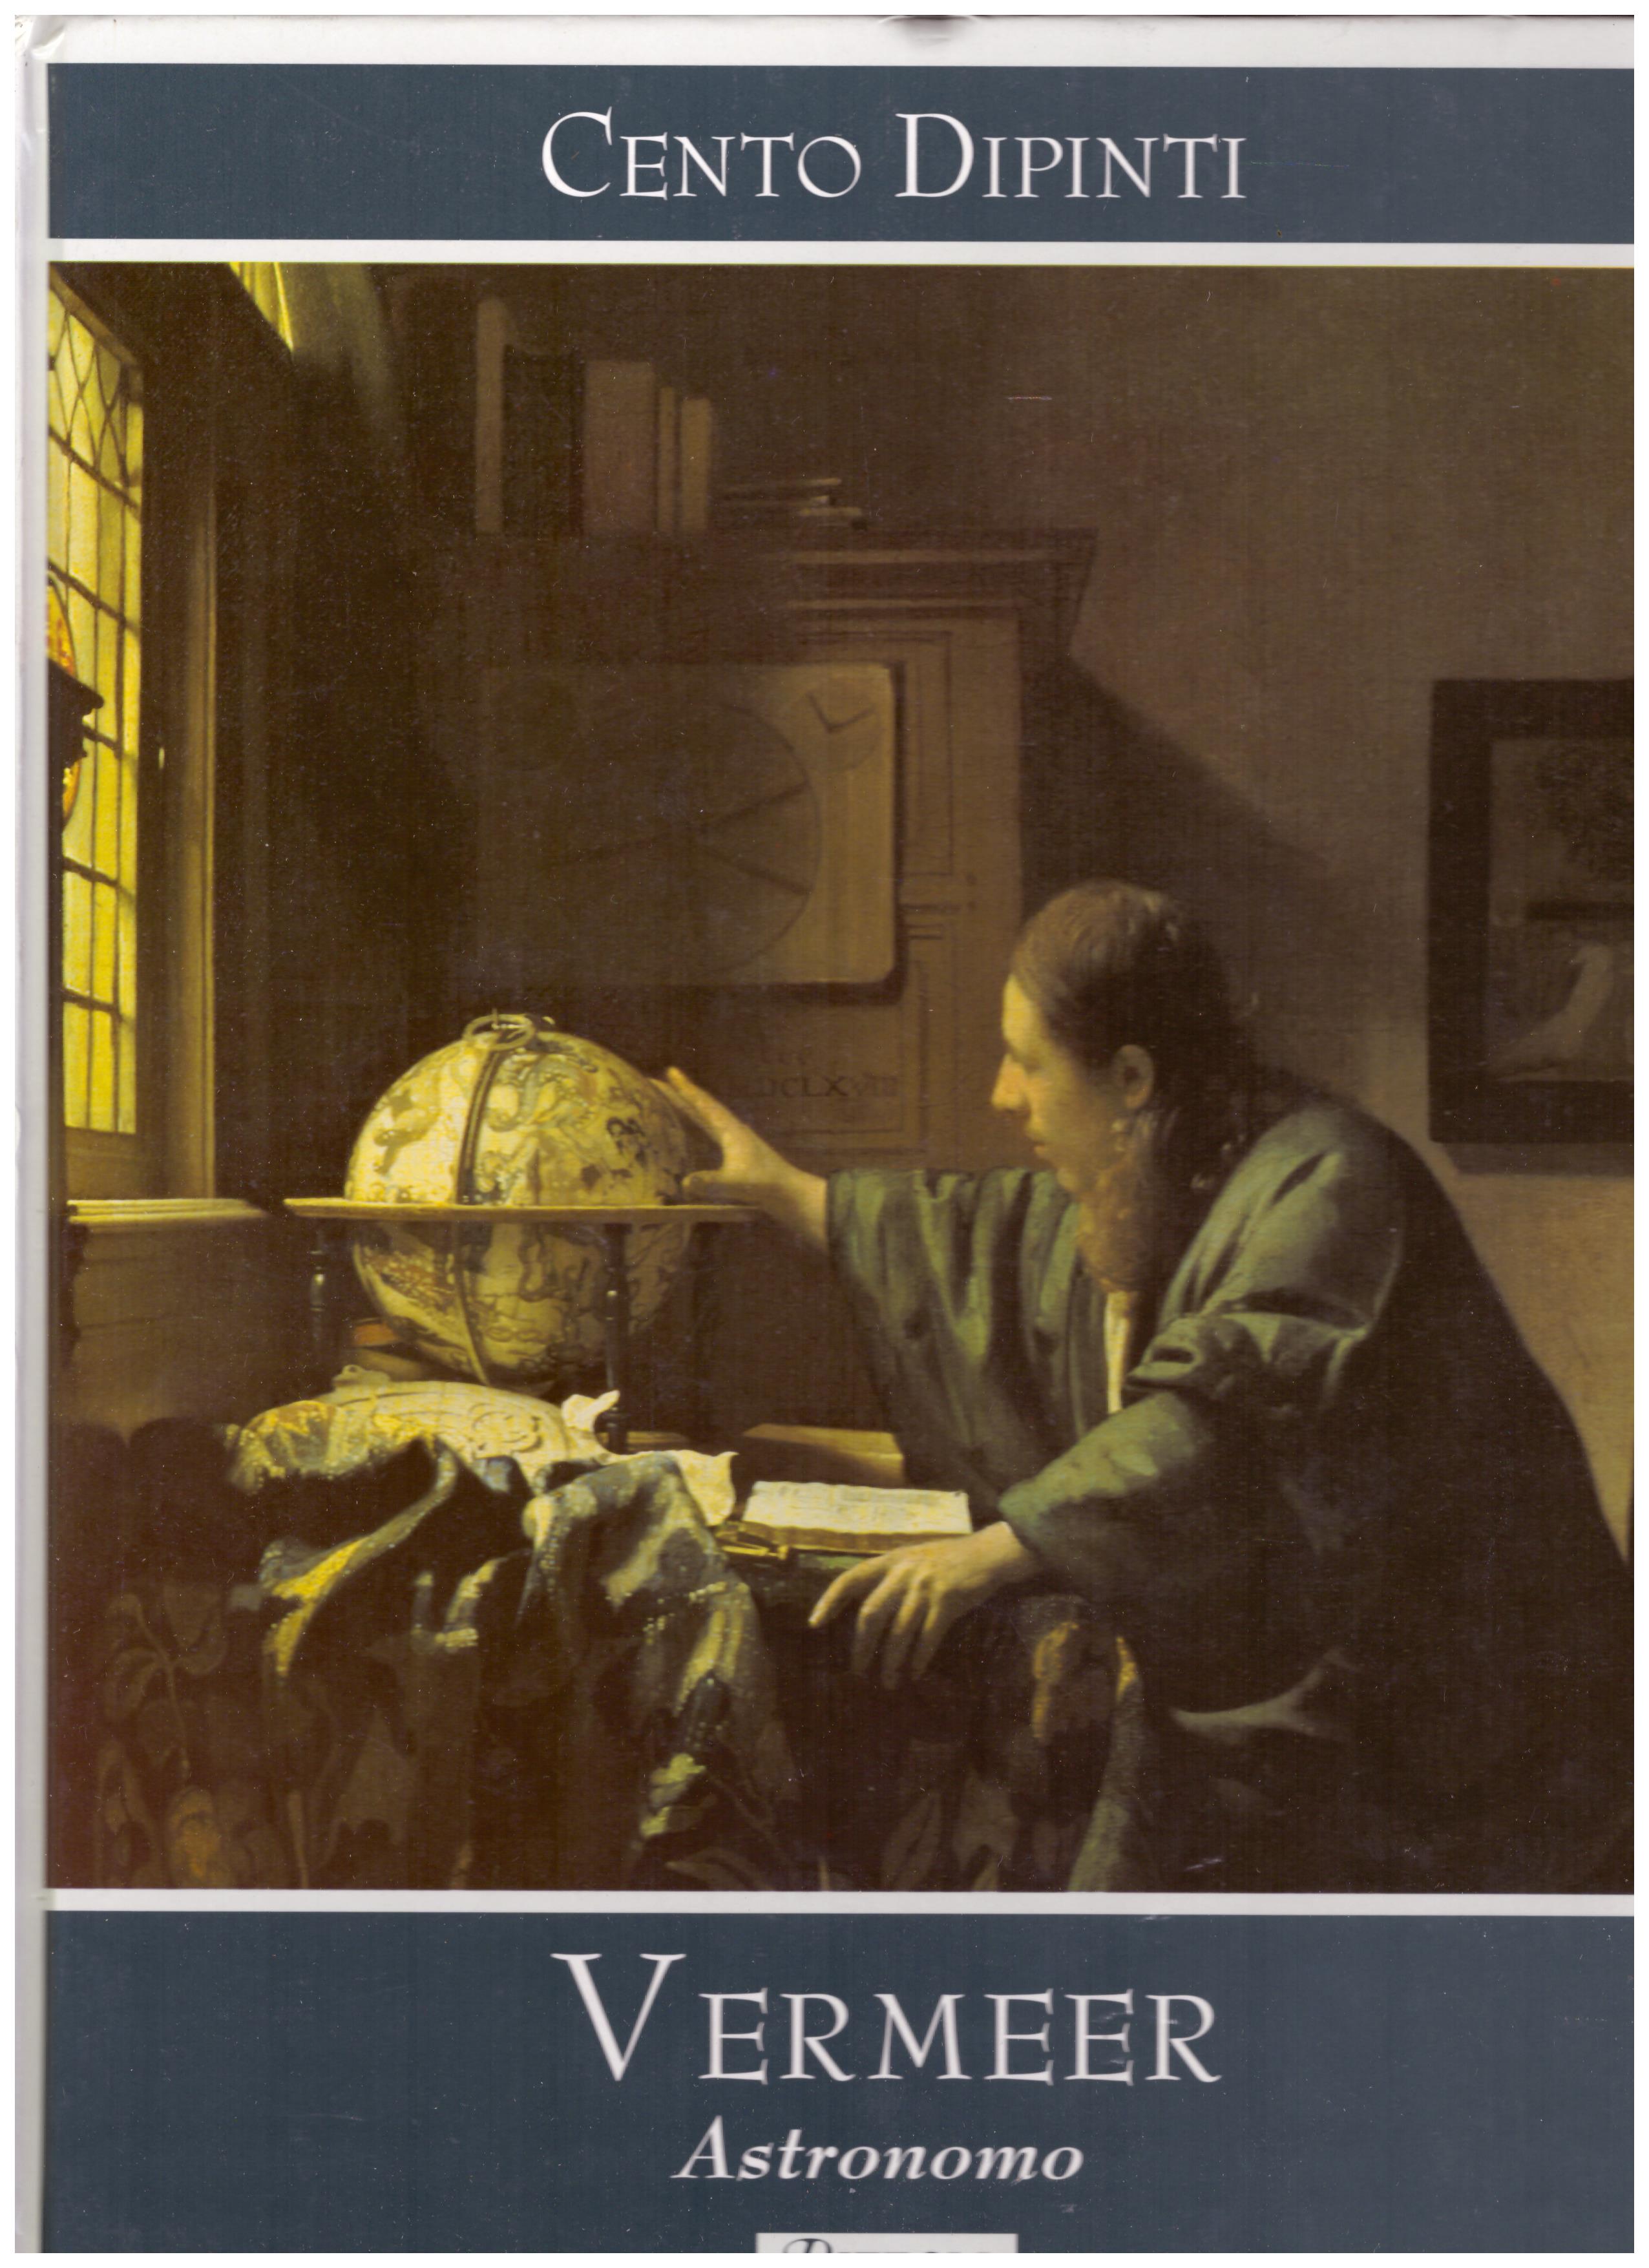 Titolo: Cento dipinti, Vermeer astronomo  Autore : AA.VV.  Editore: Rizzoli